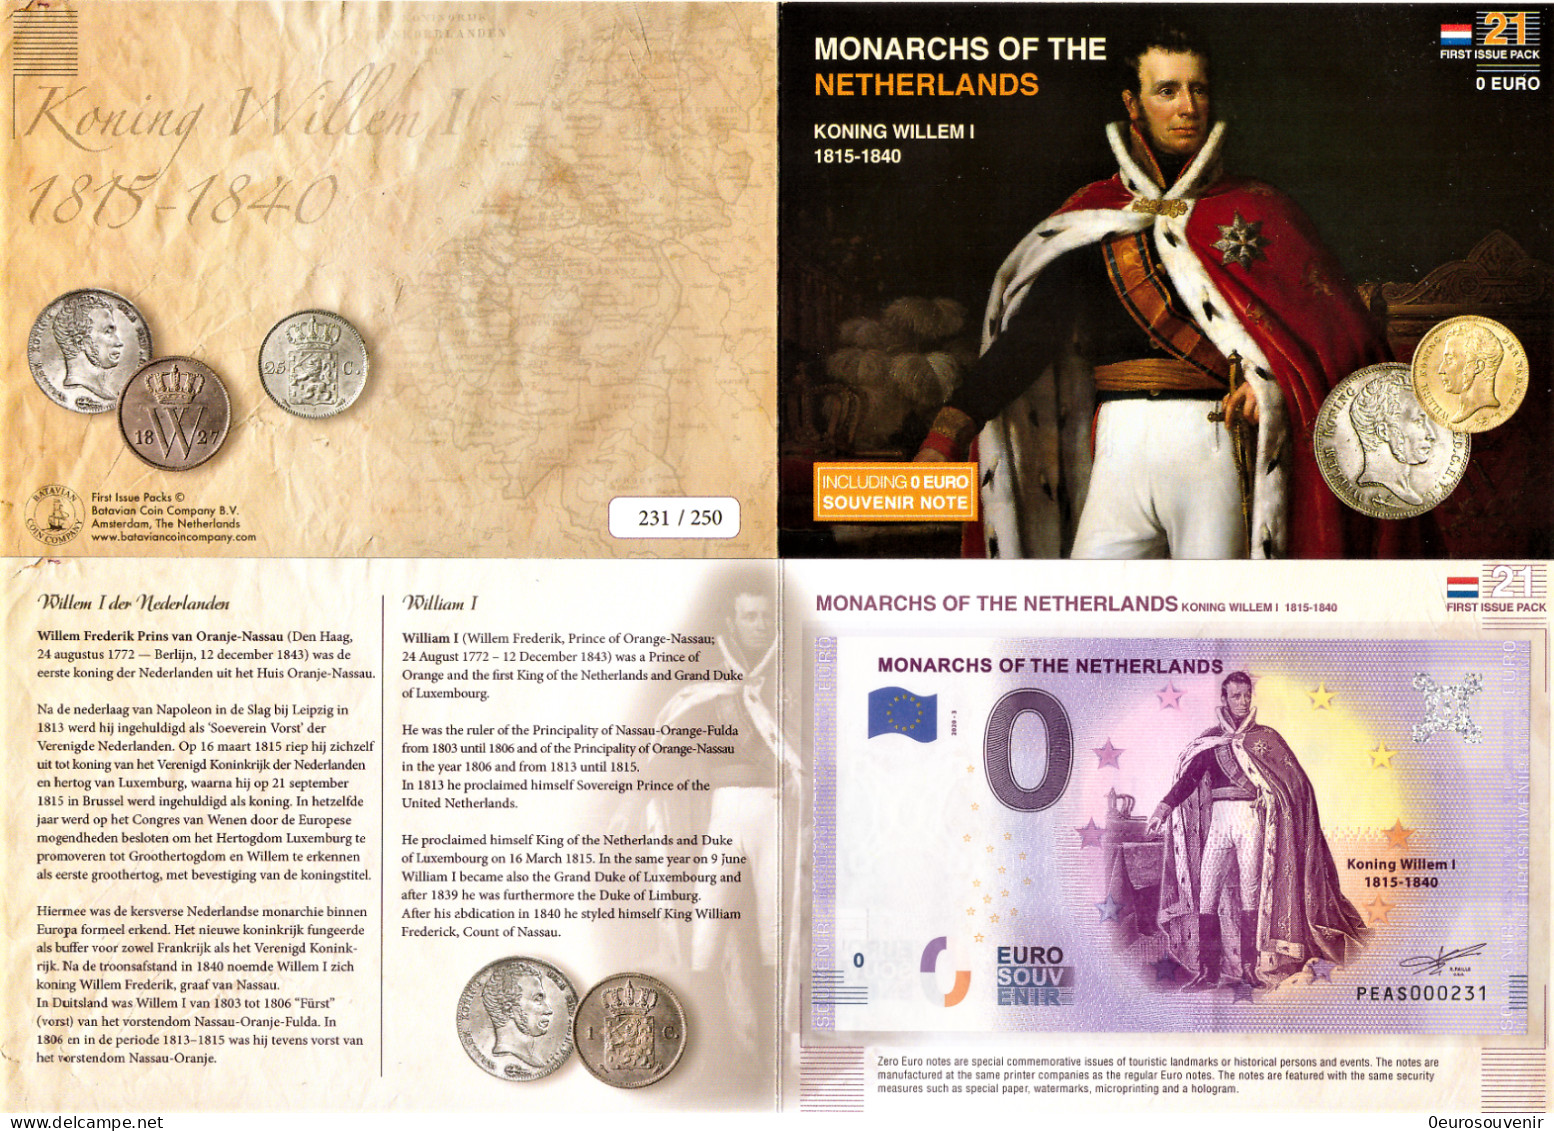 0-Euro PEAS 2020-3 MONARCHS OF THE NETHERLANDS WILLEM I 1815-1840 First Issue Pack No. Nur Bis #250 ! - Pruebas Privadas